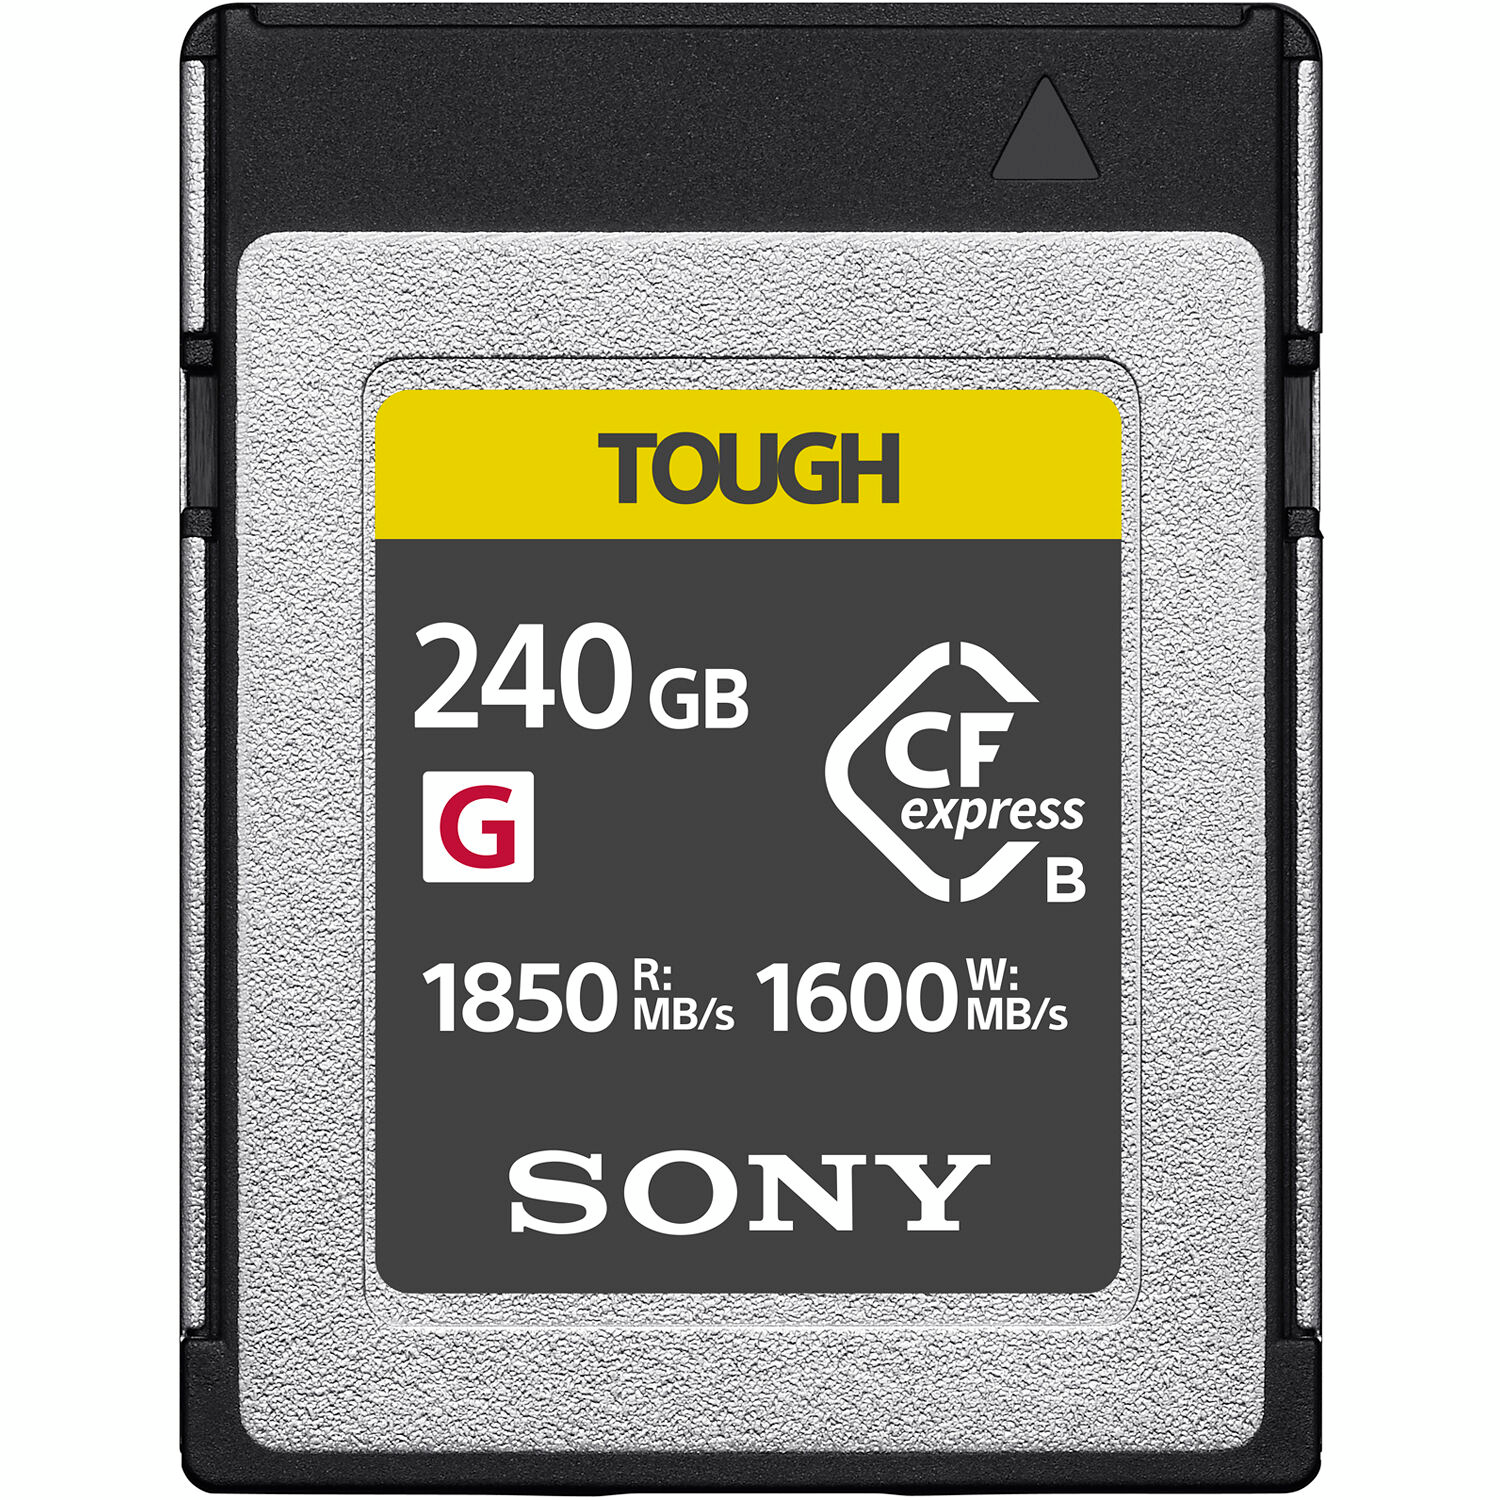 Карта пам`яті Sony CFexpress Type B 240GB R1850/W1600MB/s Tough (CEBG240T.CE7)фото